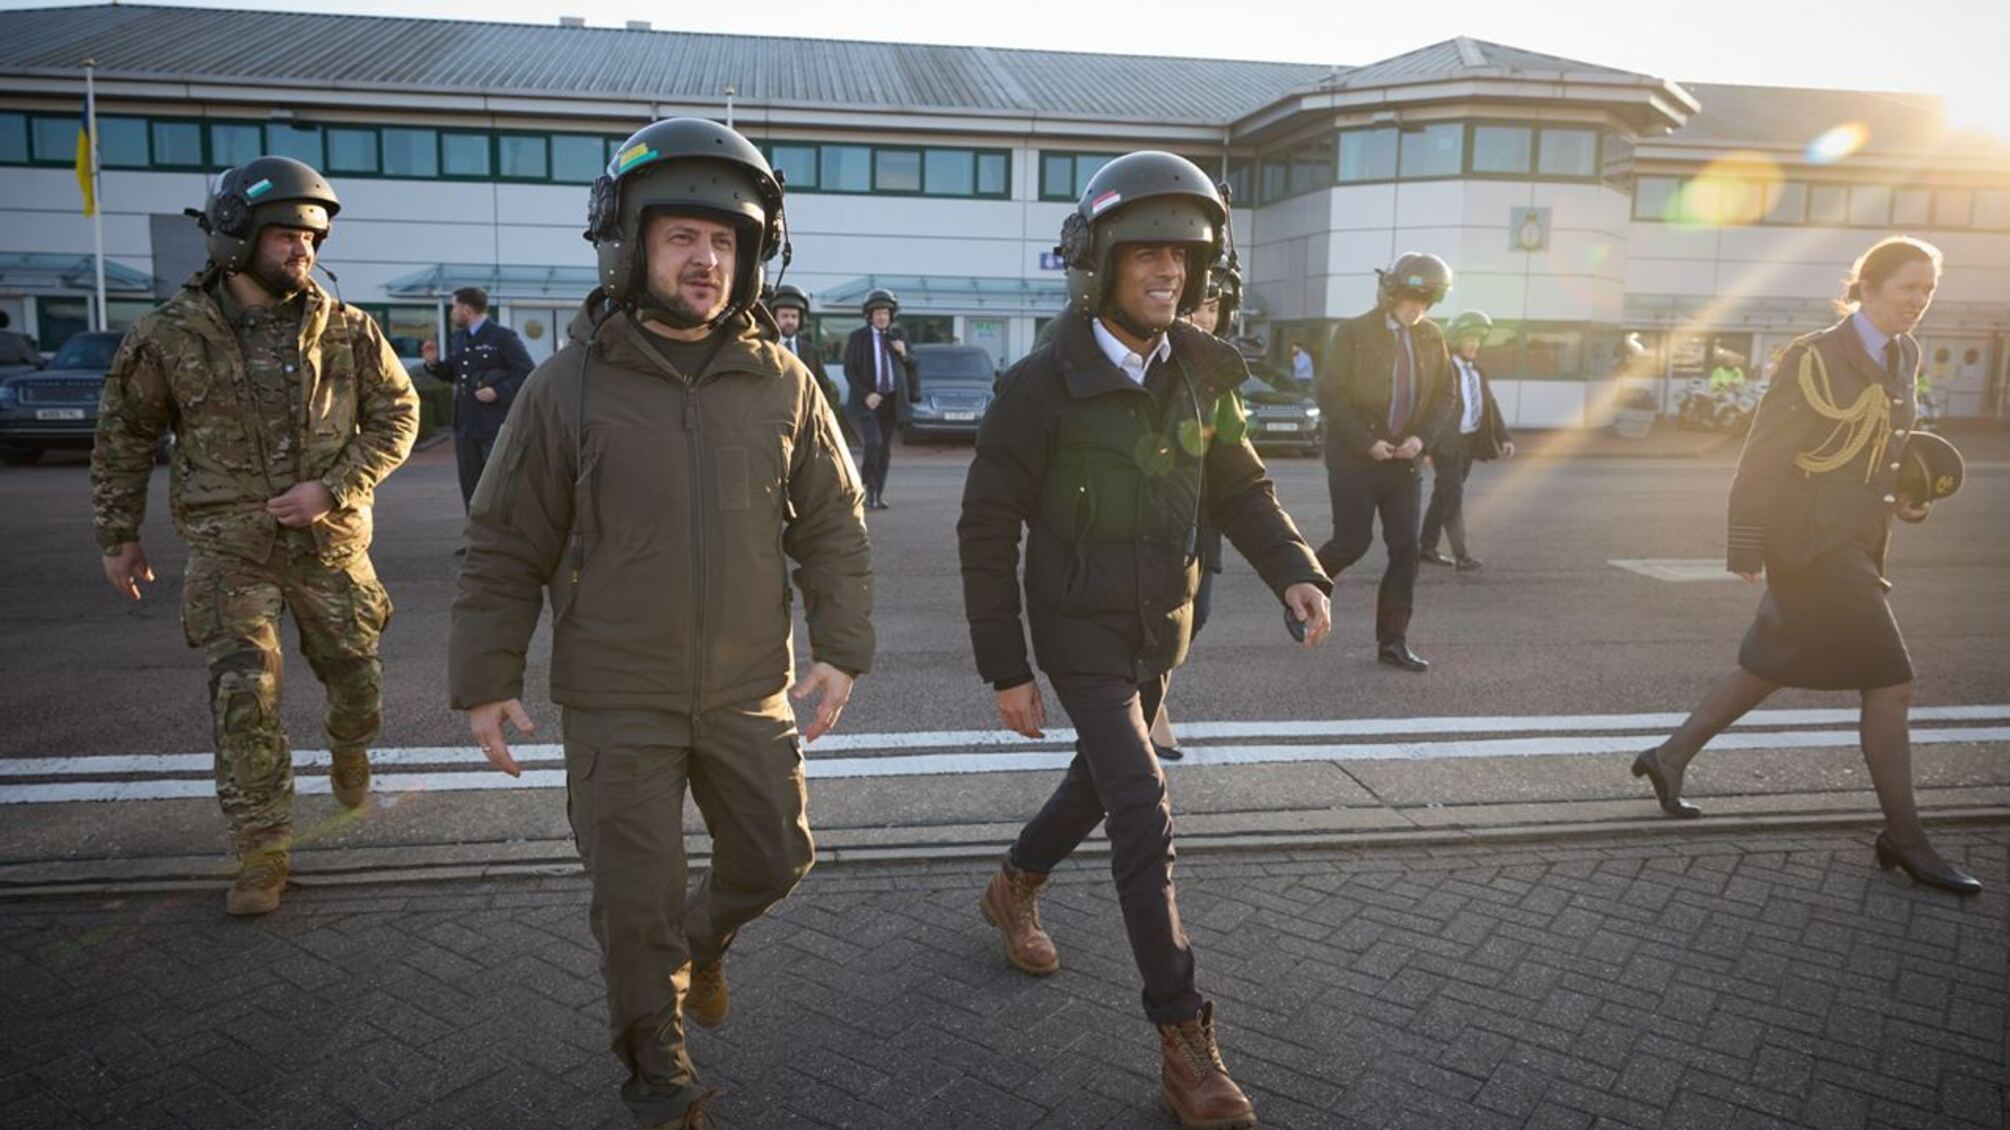 Поездка Зеленского в Британию: визит на военную базу и в Парламент, объятия с журналисткой BBC - подробности